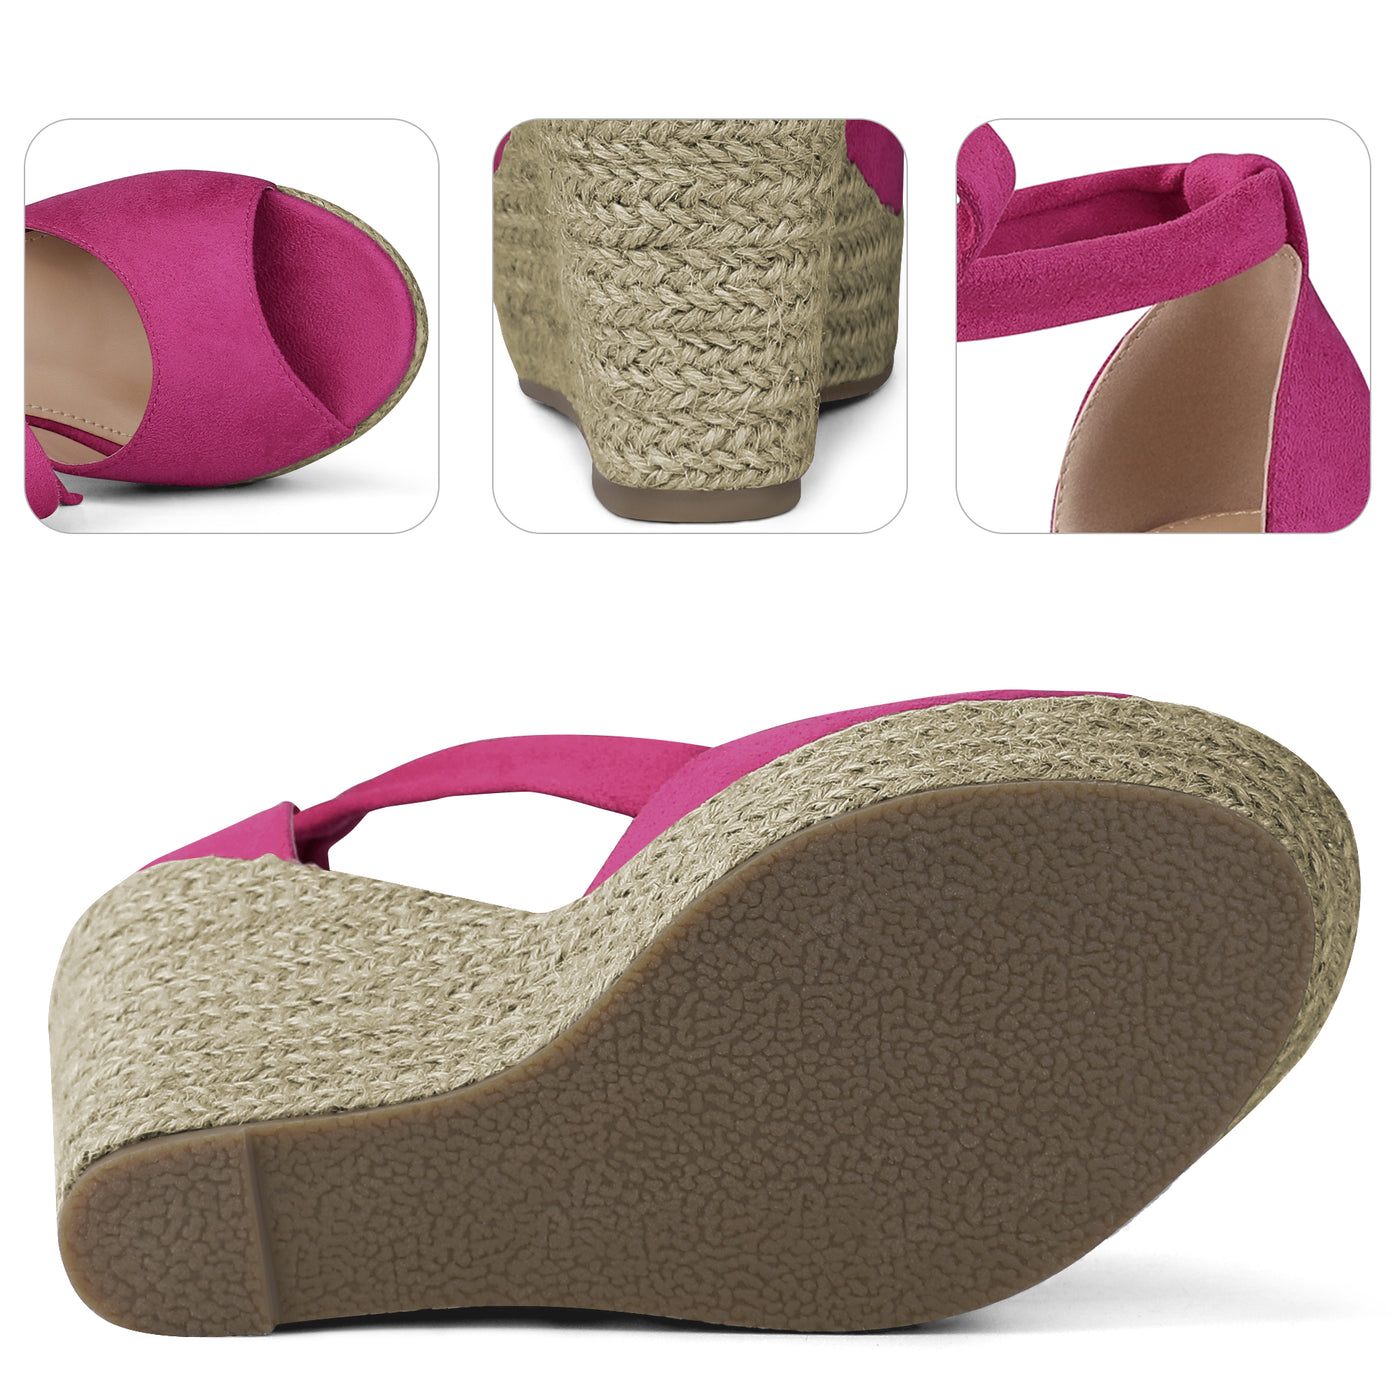 Bublédon Platform Espadrilles Ankle Tie Wedge Sandals for Women